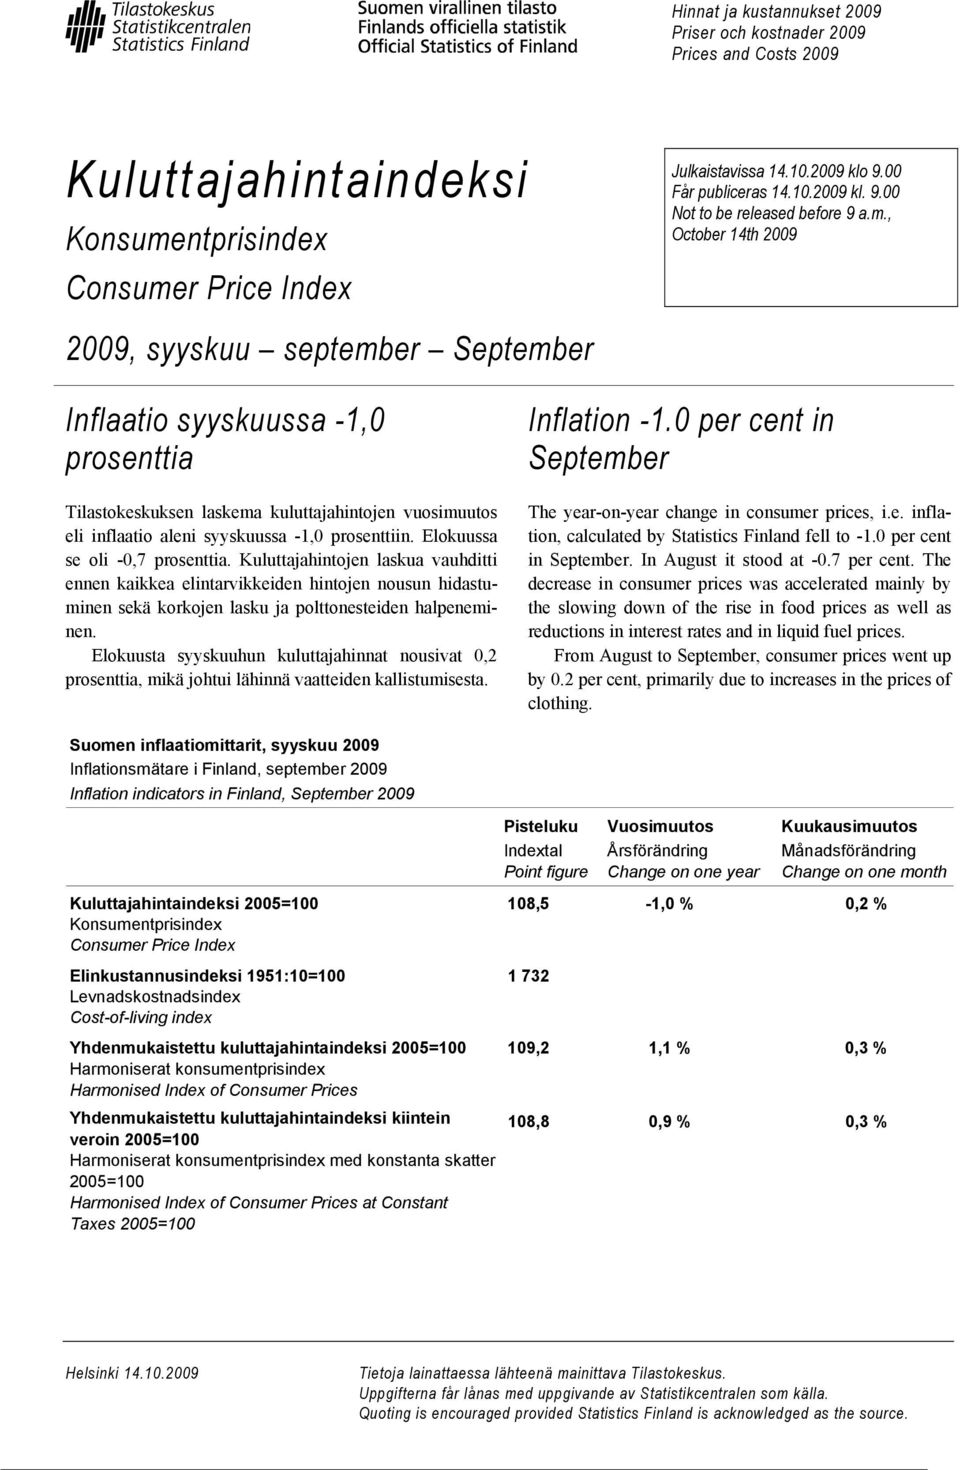 , October 14th 2009 Inflaatio syyskuussa -1,0 prosenttia Tilastokeskuksen laskema kuluttajahintojen vuosimuutos eli inflaatio aleni syyskuussa -1,0 prosenttiin. Elokuussa se oli -0,7 prosenttia.